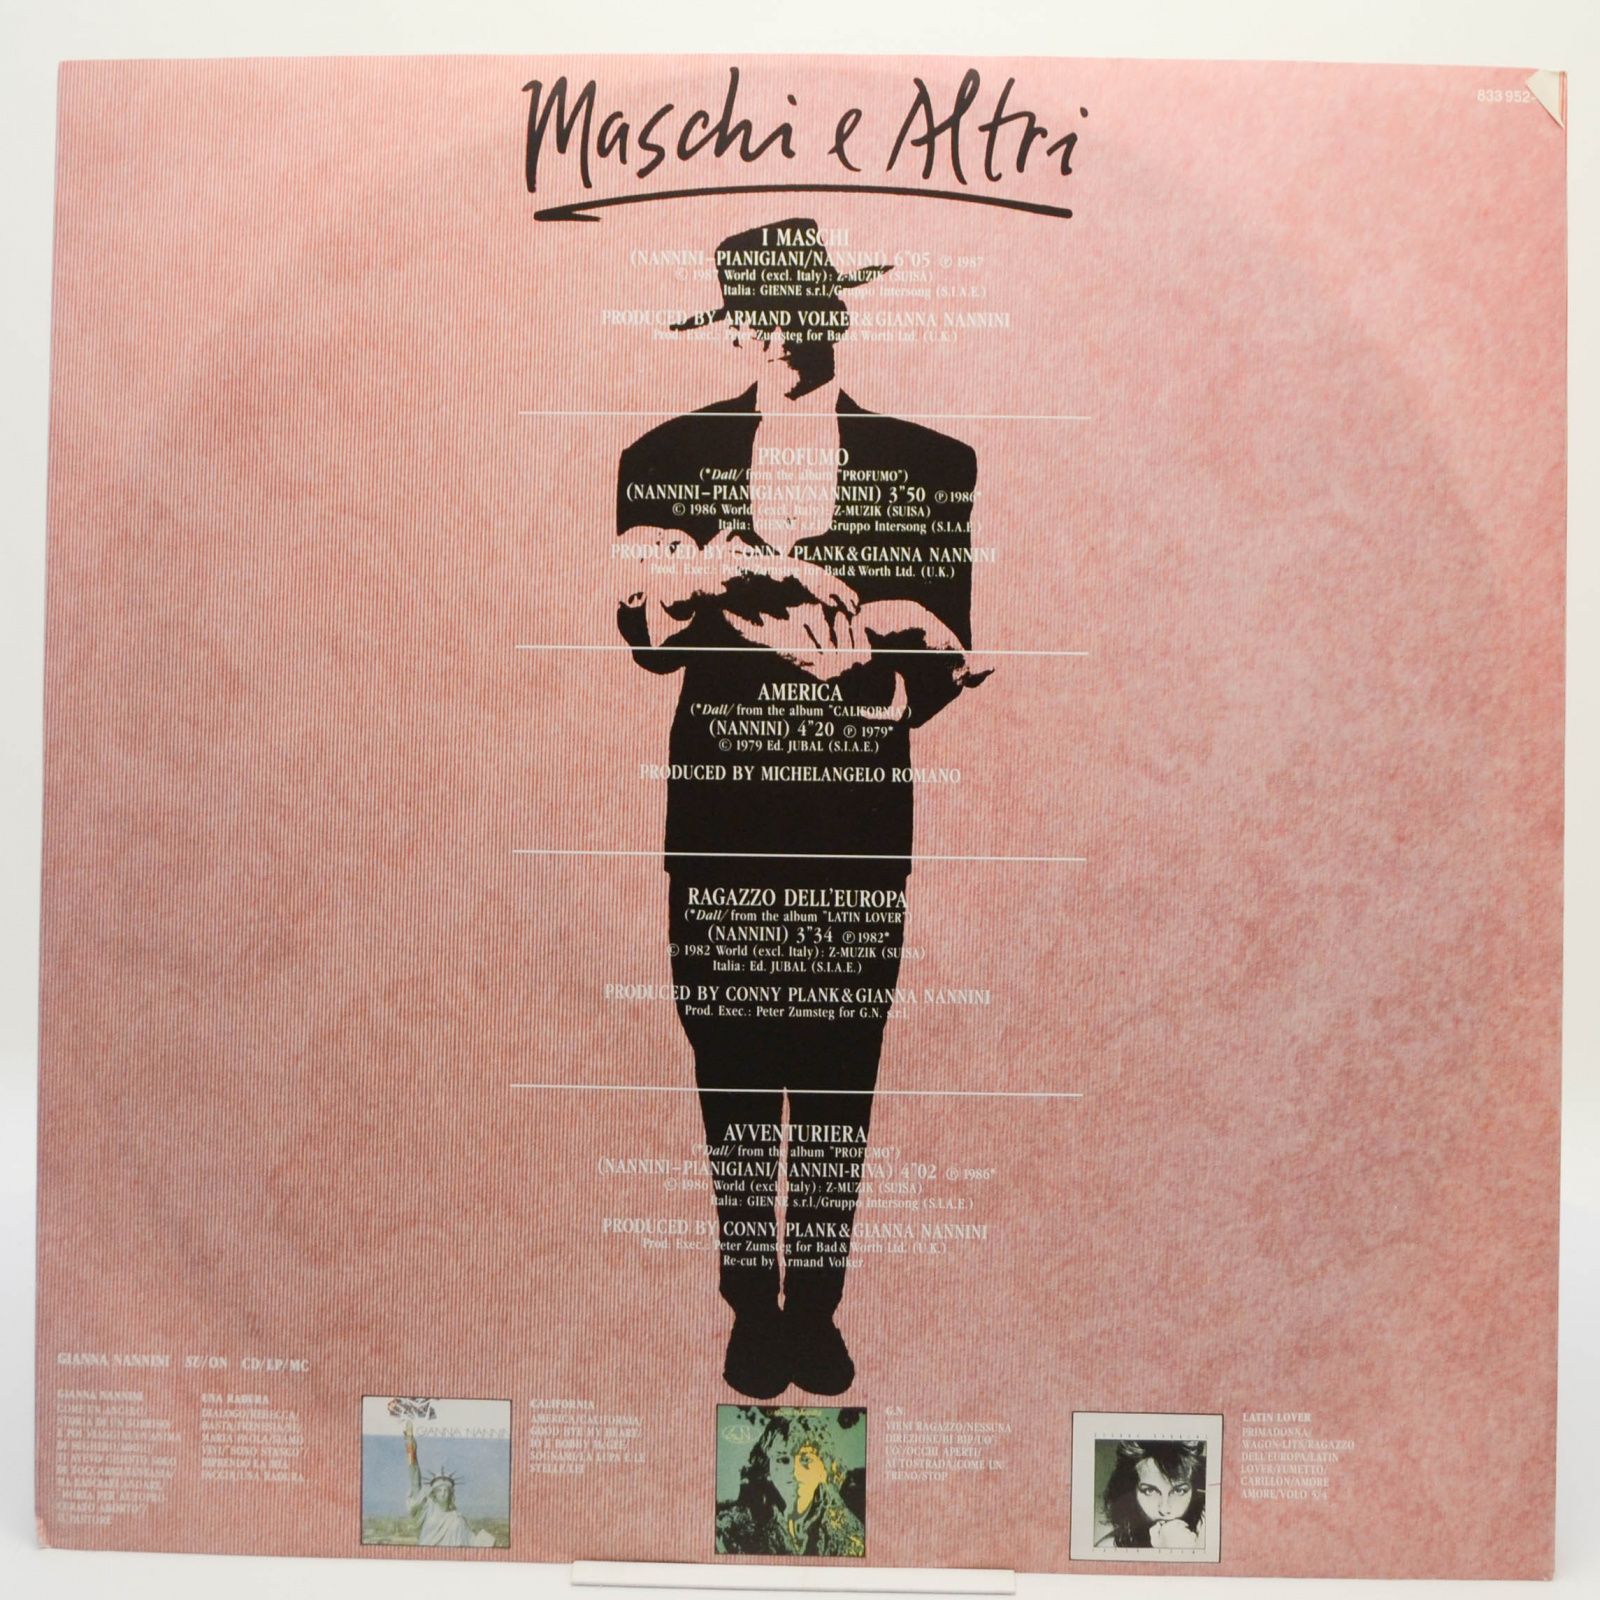 Gianna Nannini — Maschi E Altri, 1987